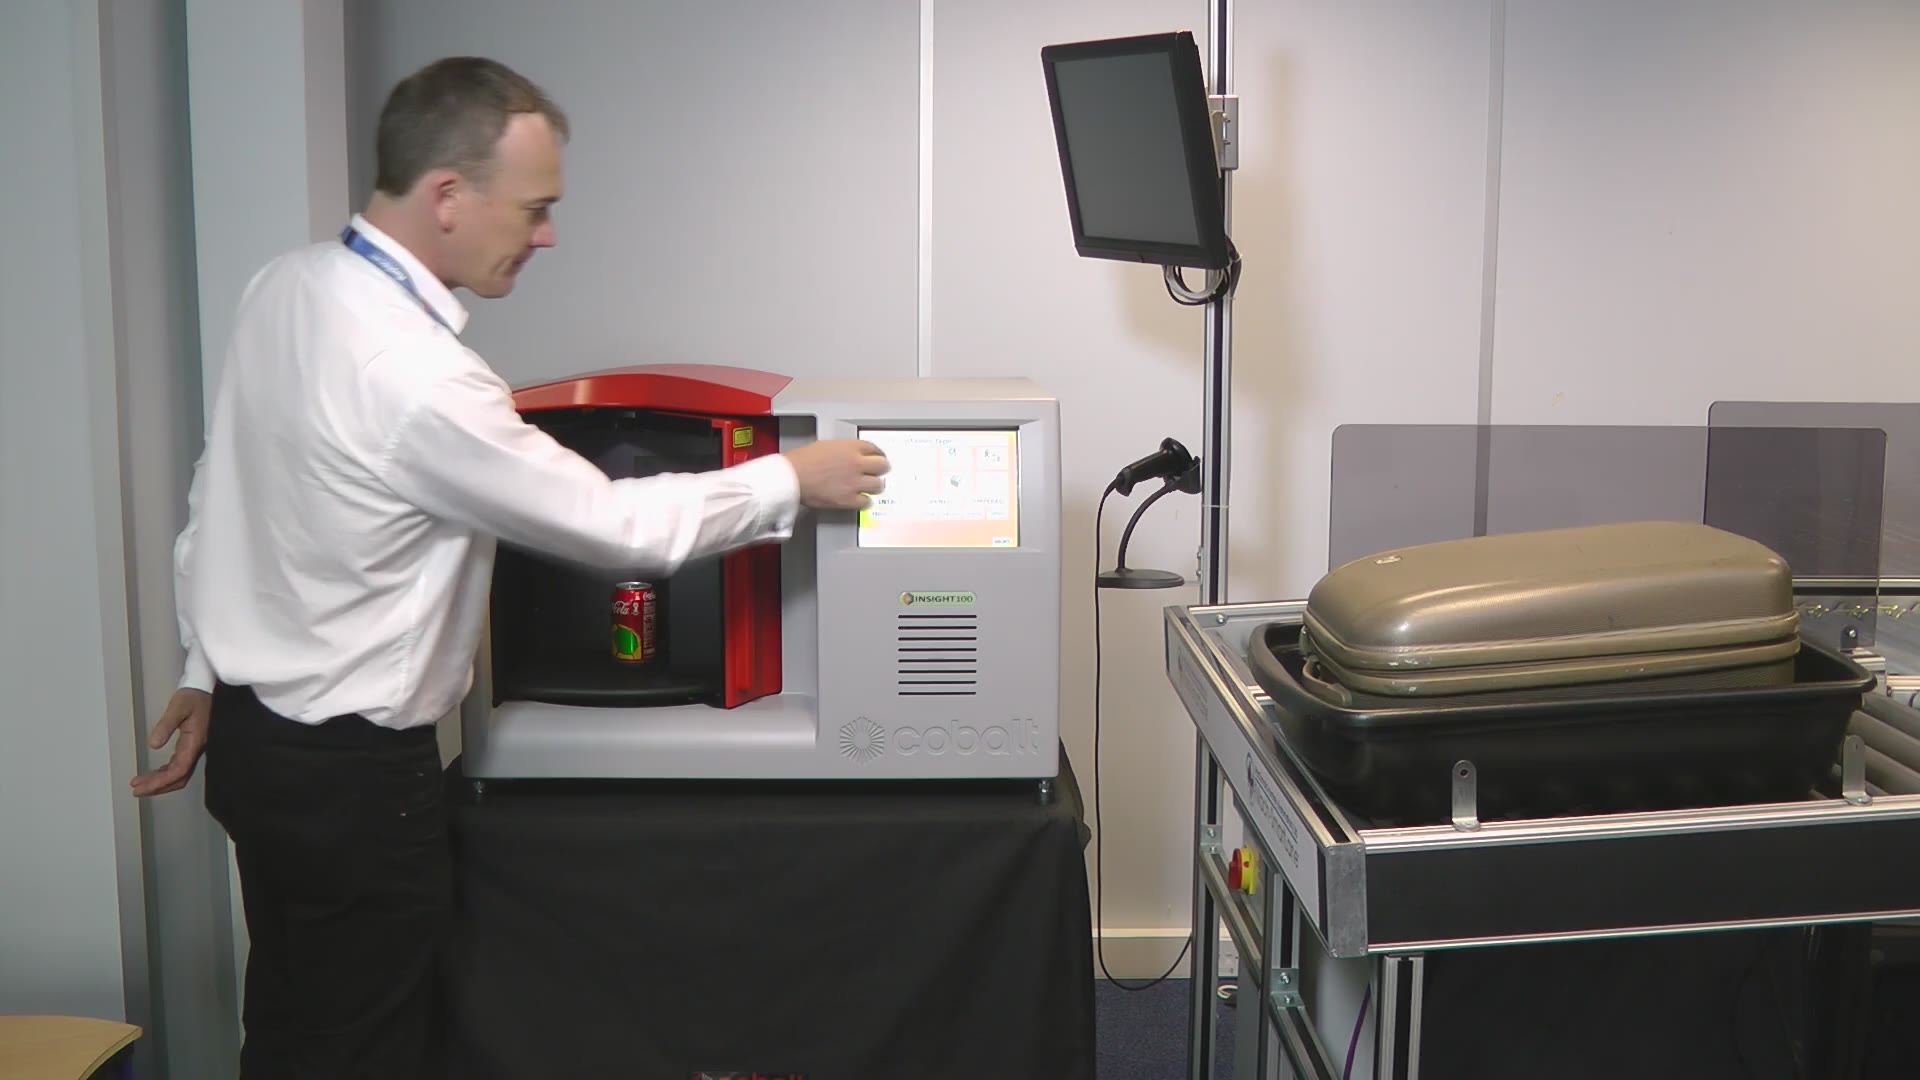 Un nuevo escáner de explosivos permitirá volver a subir líquidos a los aviones